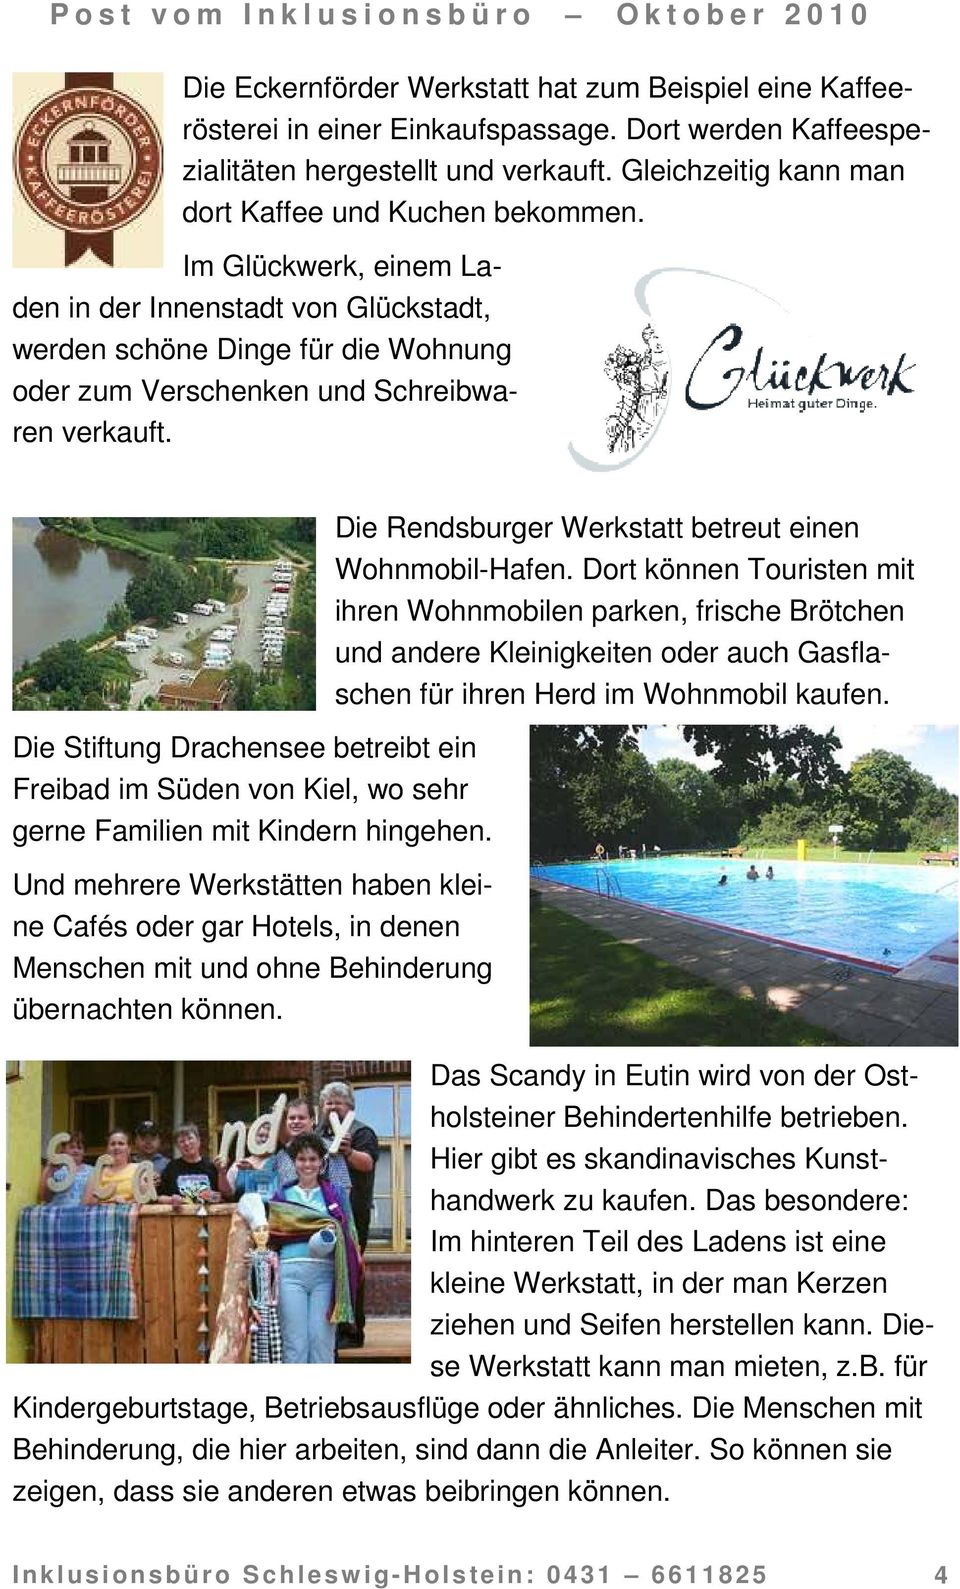 Die Stiftung Drachensee betreibt ein Freibad im Süden von Kiel, wo sehr gerne Familien mit Kindern hingehen.